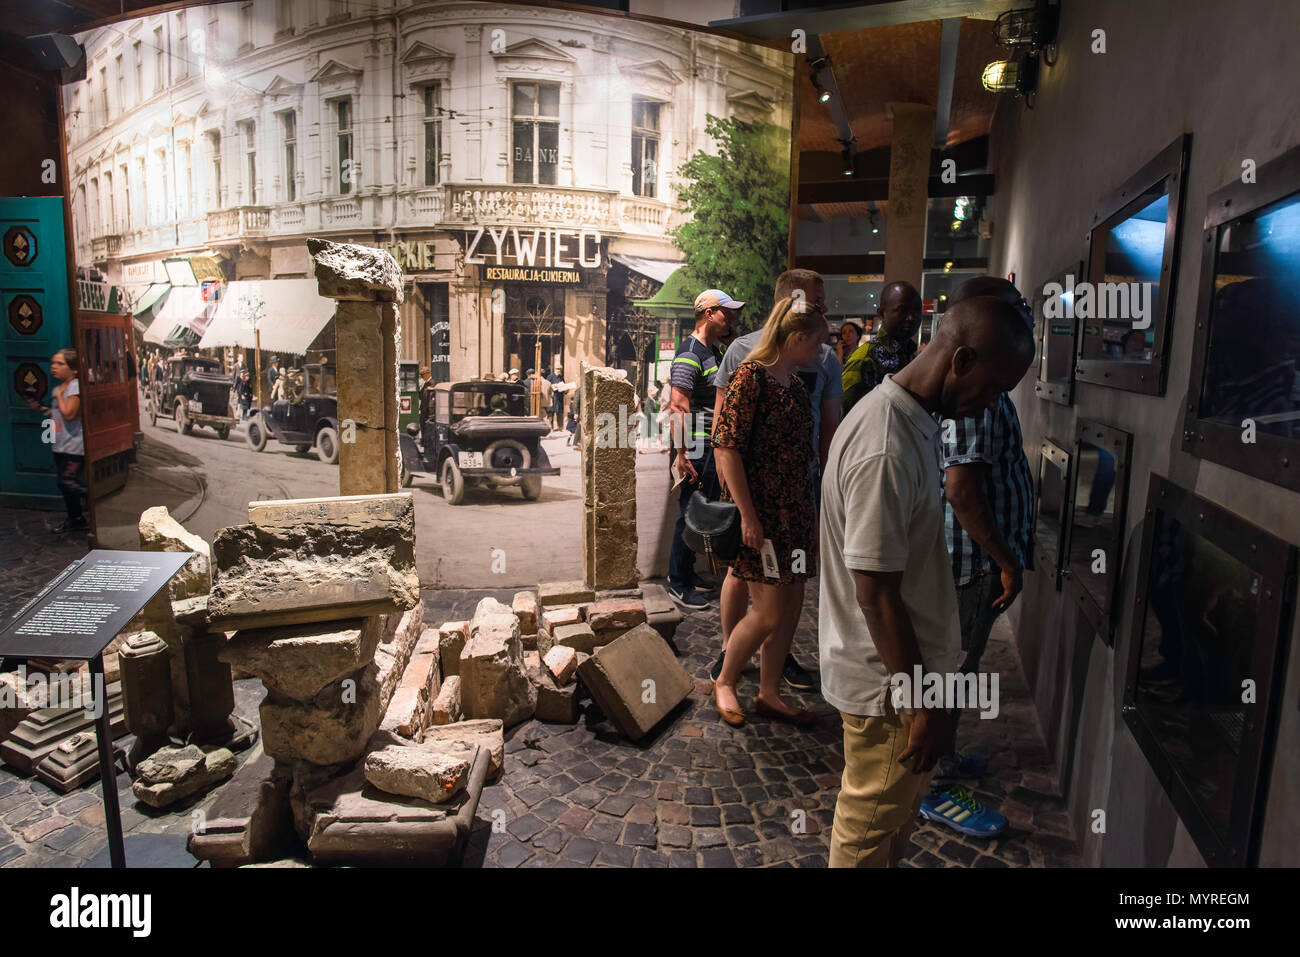 Musée de l'Insurrection de Varsovie, les visiteurs du musée vue affiche relatant le soulèvement du peuple de Varsovie contre l'occupation nazie en 1944, en Pologne. Banque D'Images